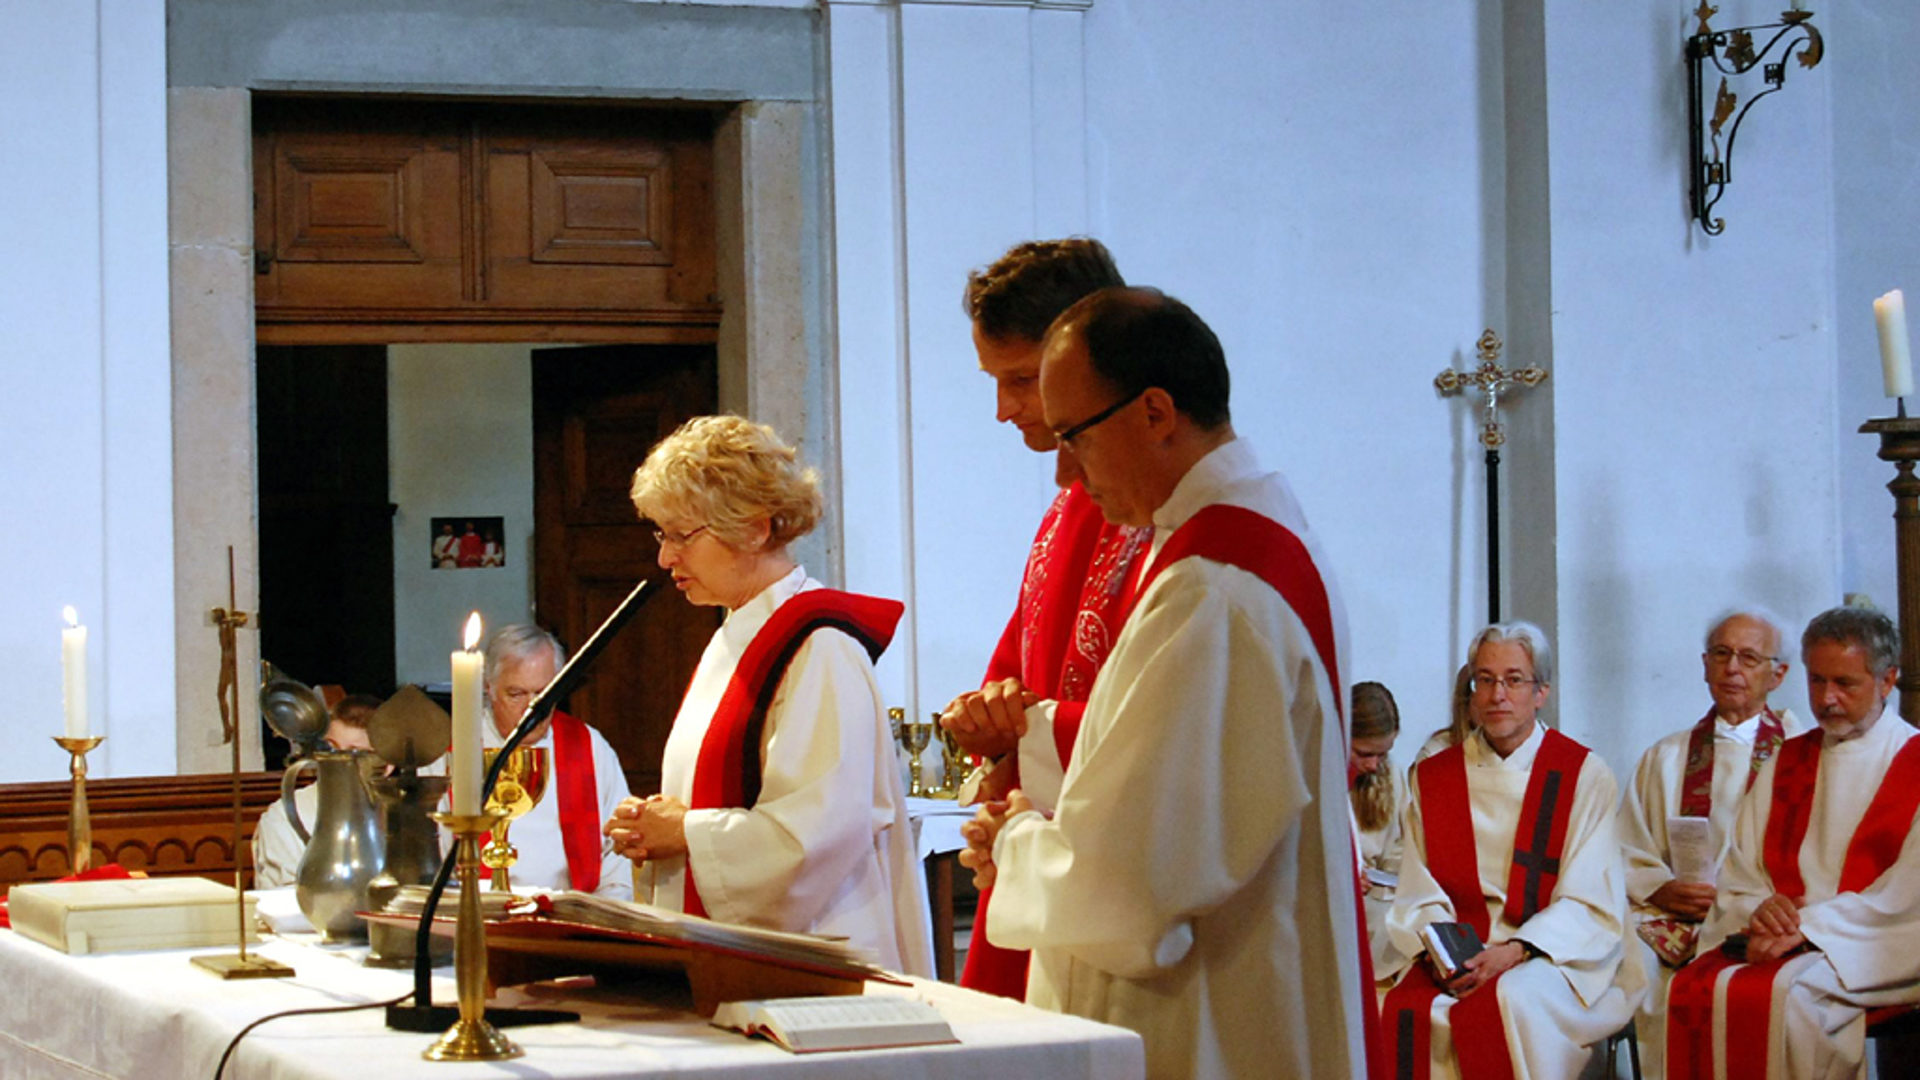 Christkatholische Eucharistiefeier mit einer Priesterin.